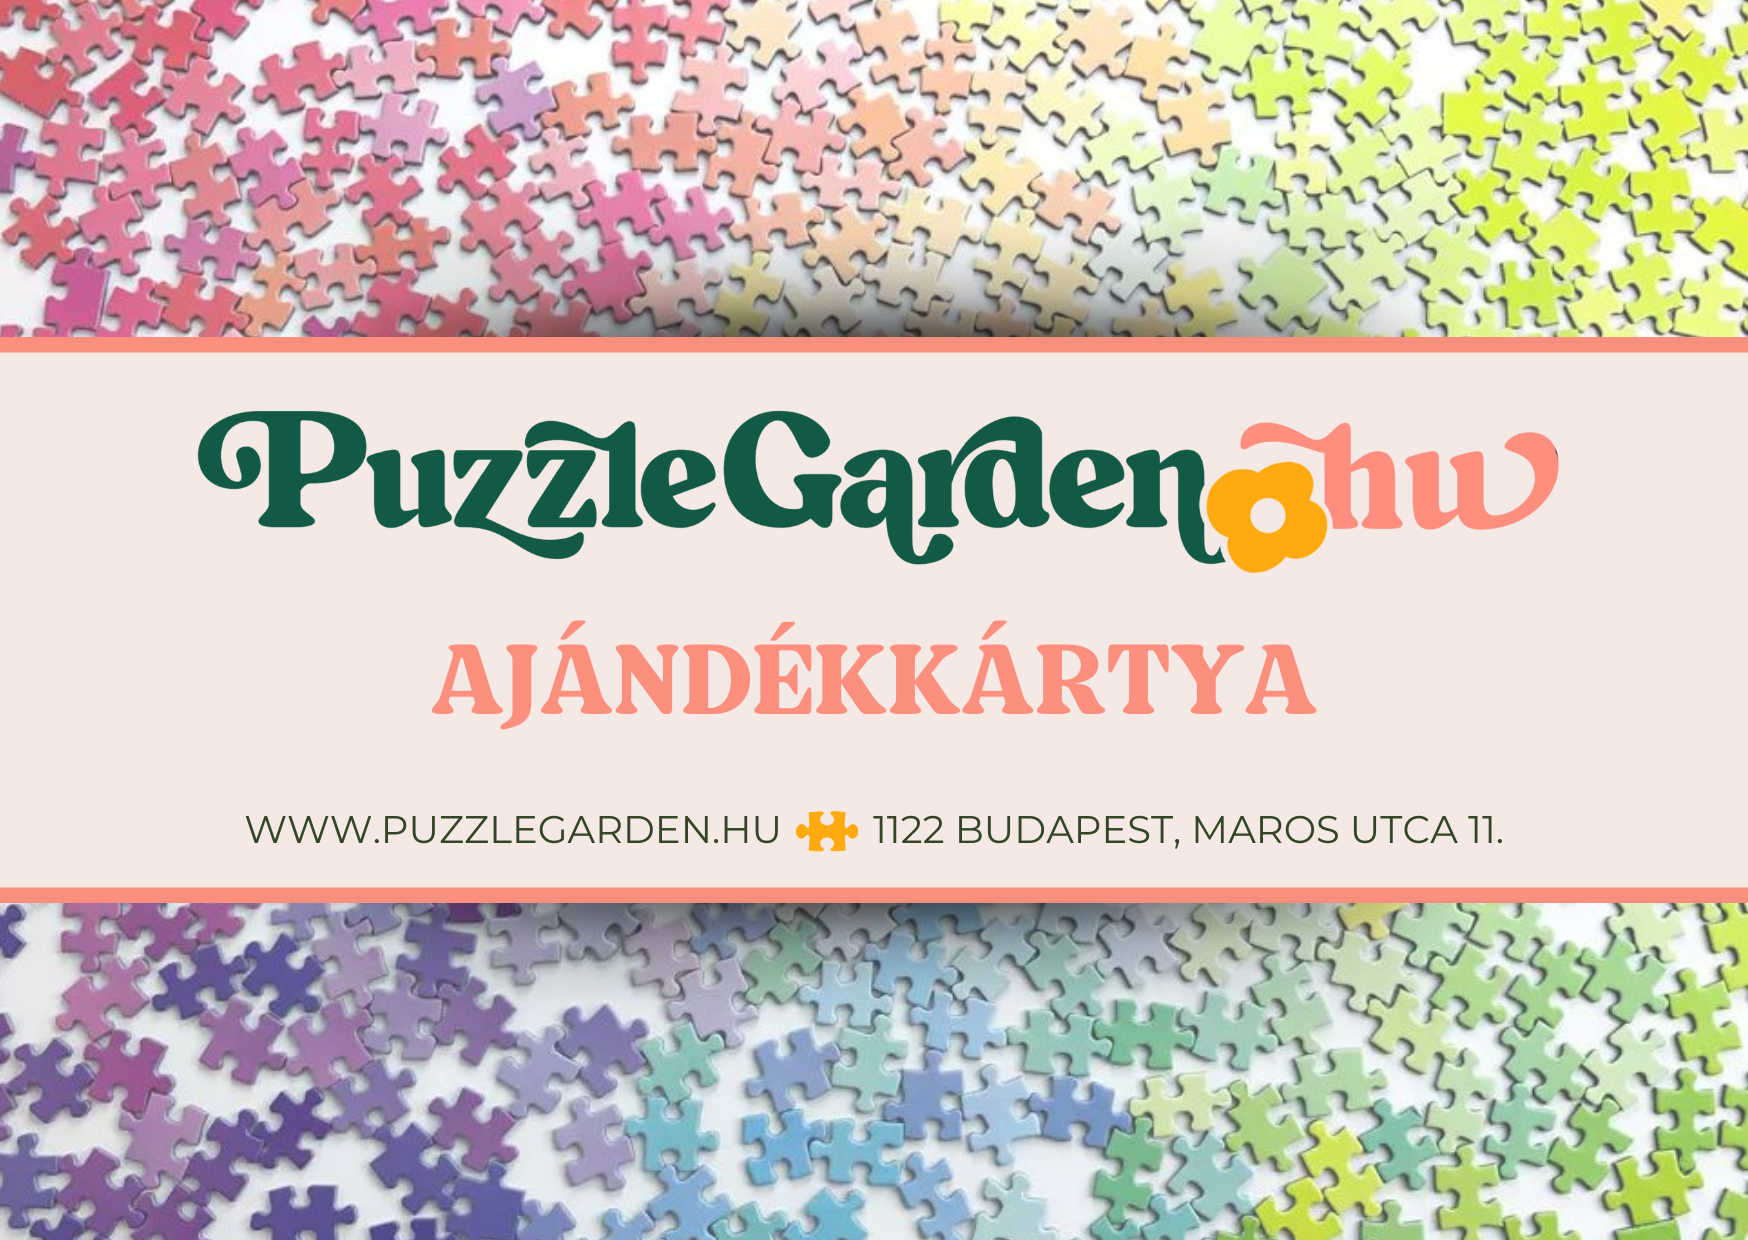 Pièces XXL - Princess' Garden - 500 Teile - EUROGRAPHICS Puzzle